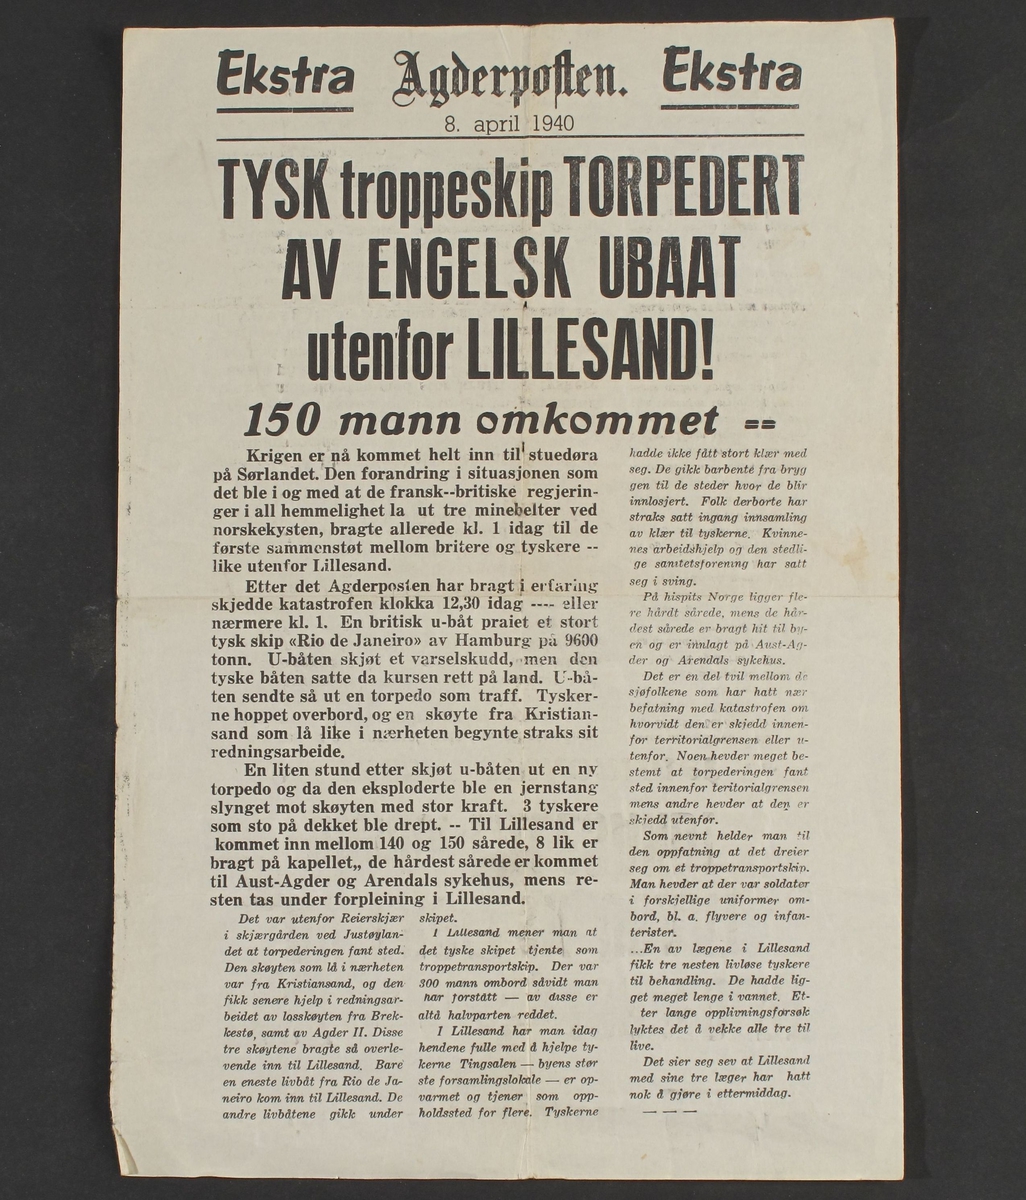 Agderposten, Ekstrautgave 9. april 1940.  1 ark, trykk på den ene side.  Overskrift: "   Tysk troppeskip torpedert av engelsk ubaat utenfor Lillesand.   150 mann omkommet.